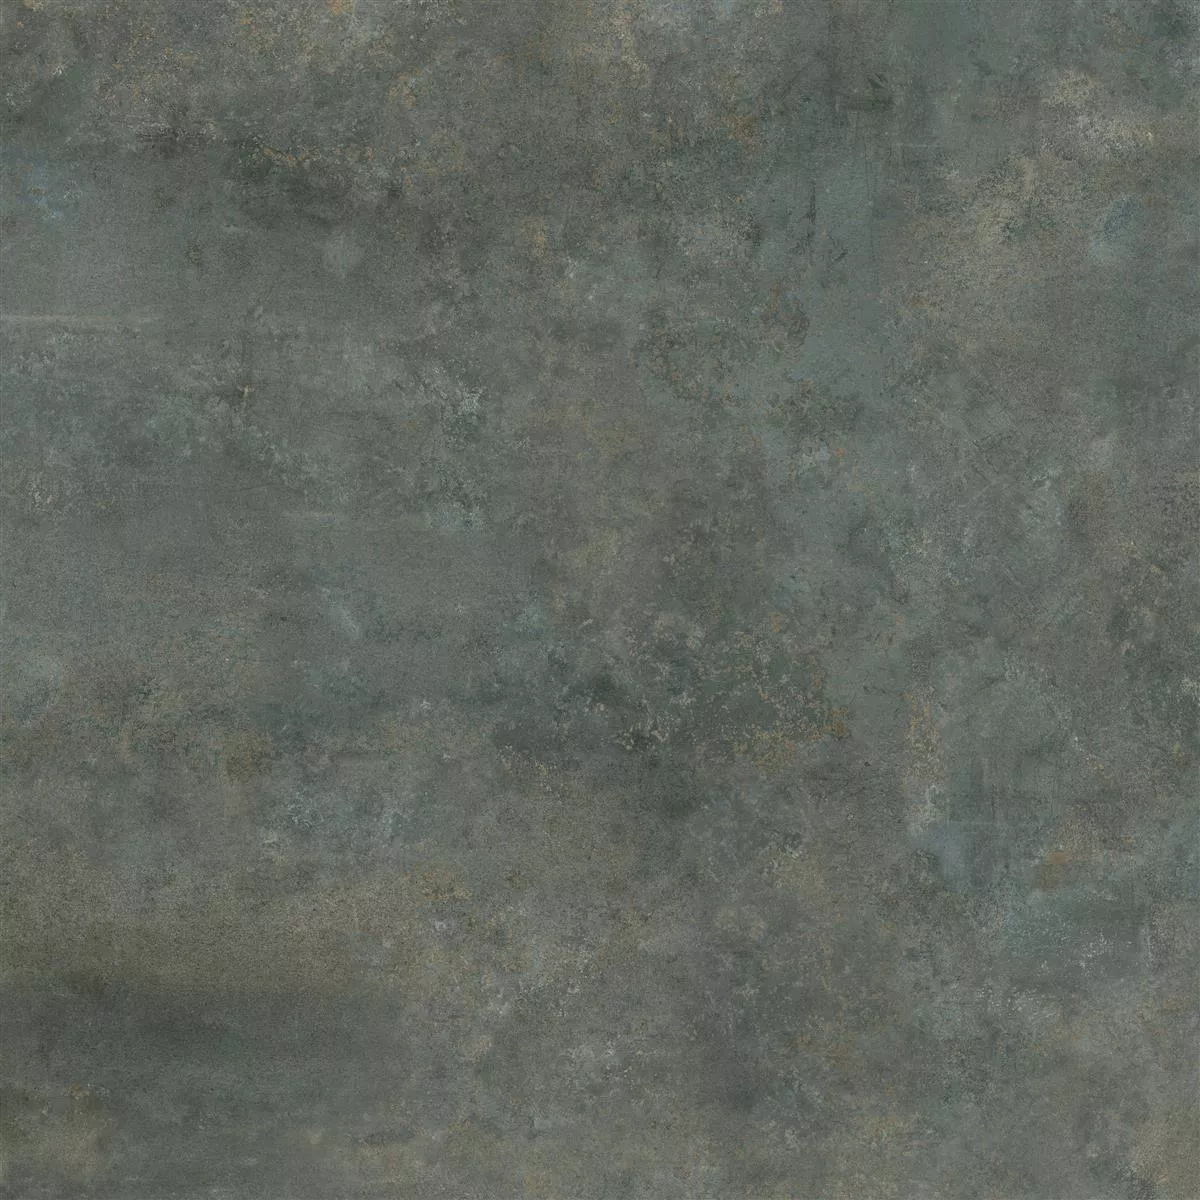 Lattialaatta Illusion Metallin Näköinen Lappato Teräksenharmaa 120x120cm